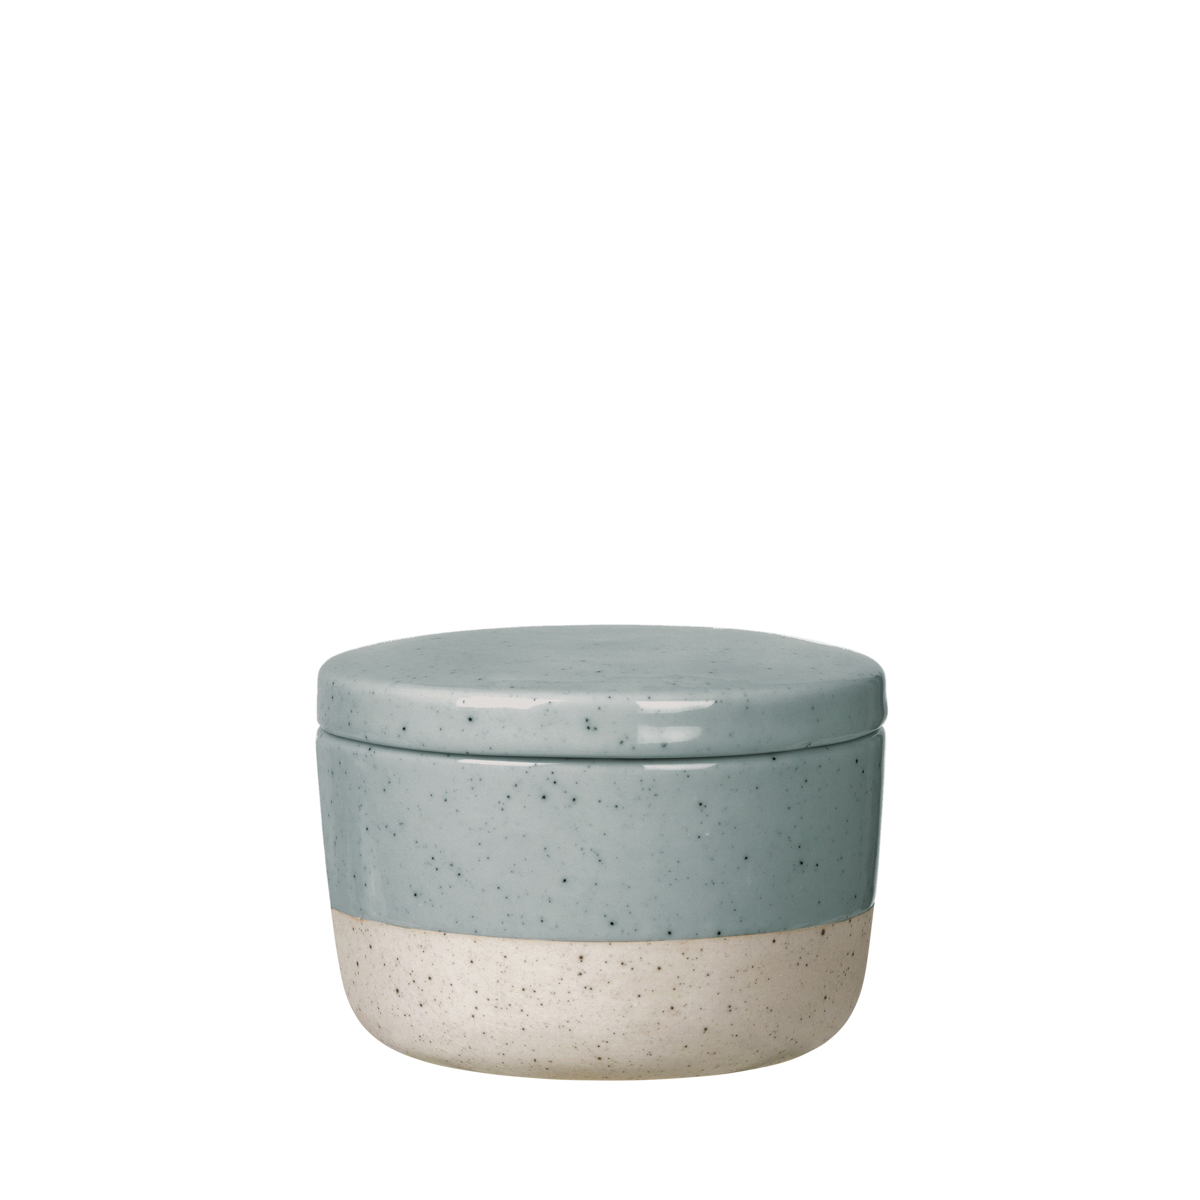 Zuckerdose -SABLO- Stone 150 ml, Ø 8,5 cm. Material: Keramik. Von Blomus.